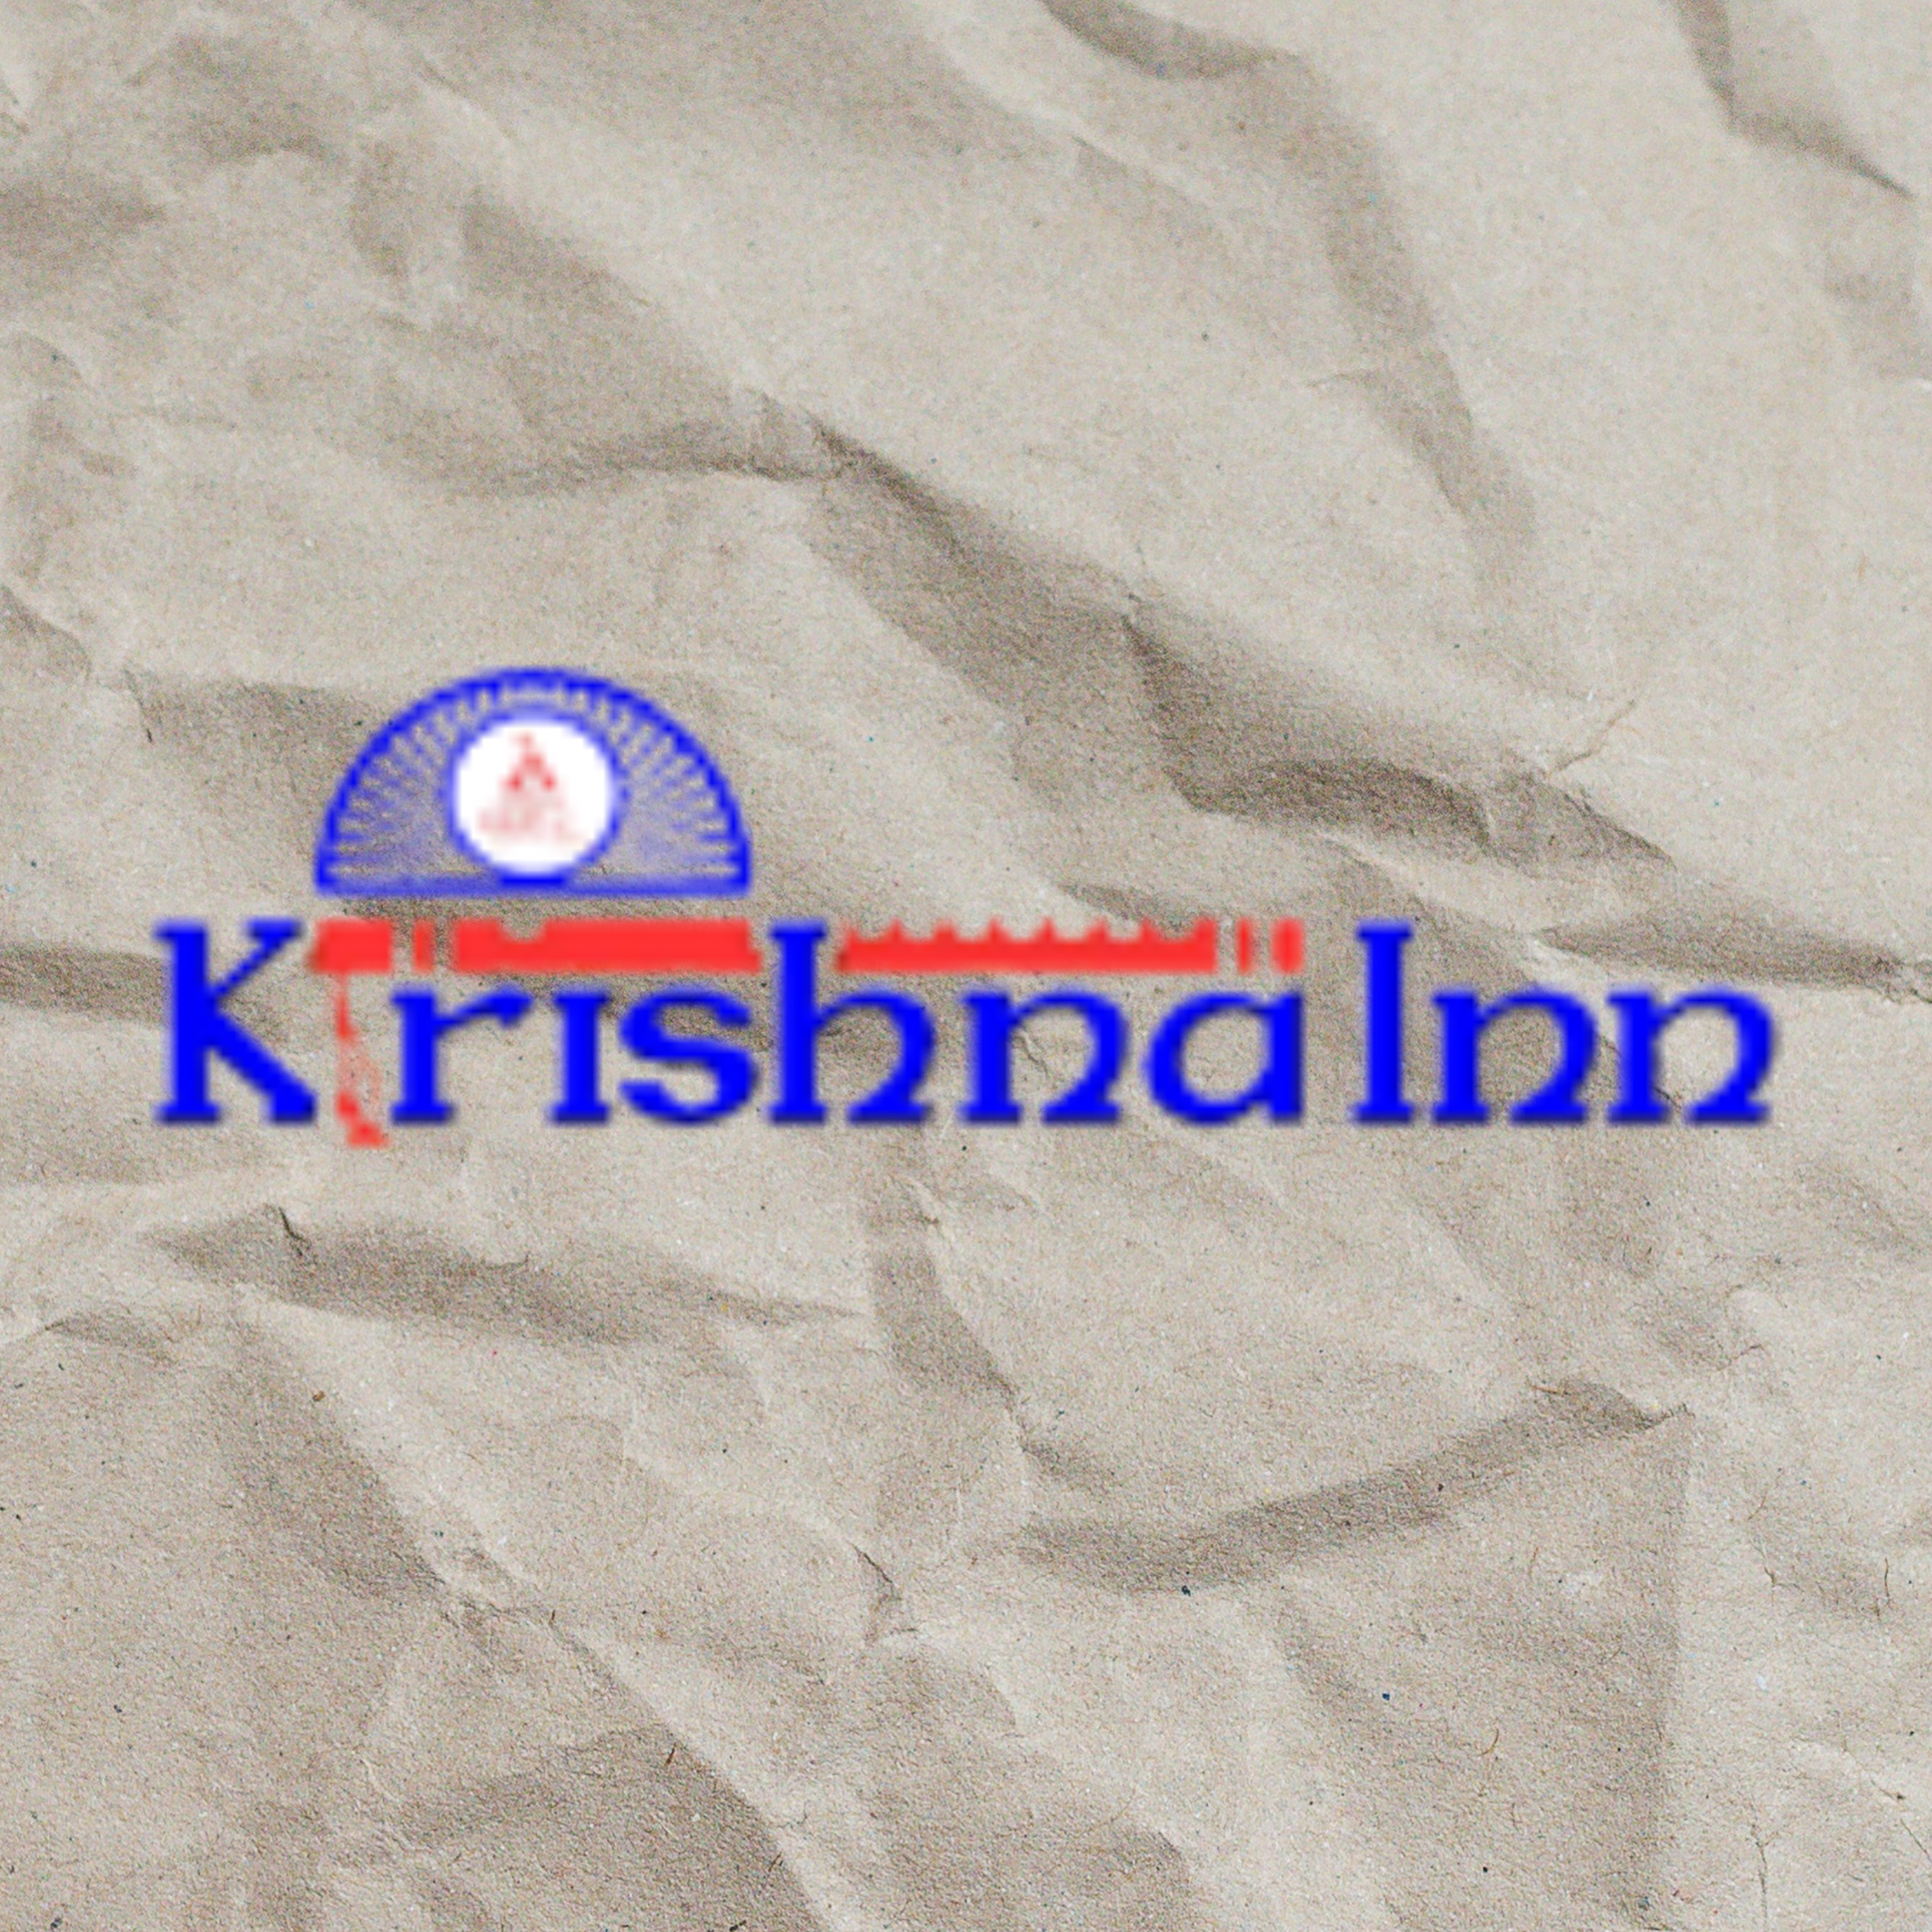 Krishnainn728